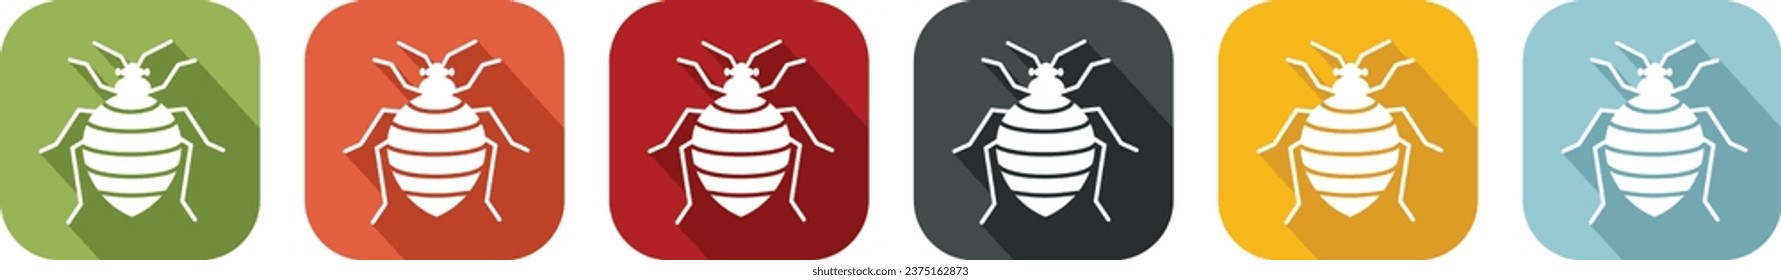 Group of coloured bedbug icons